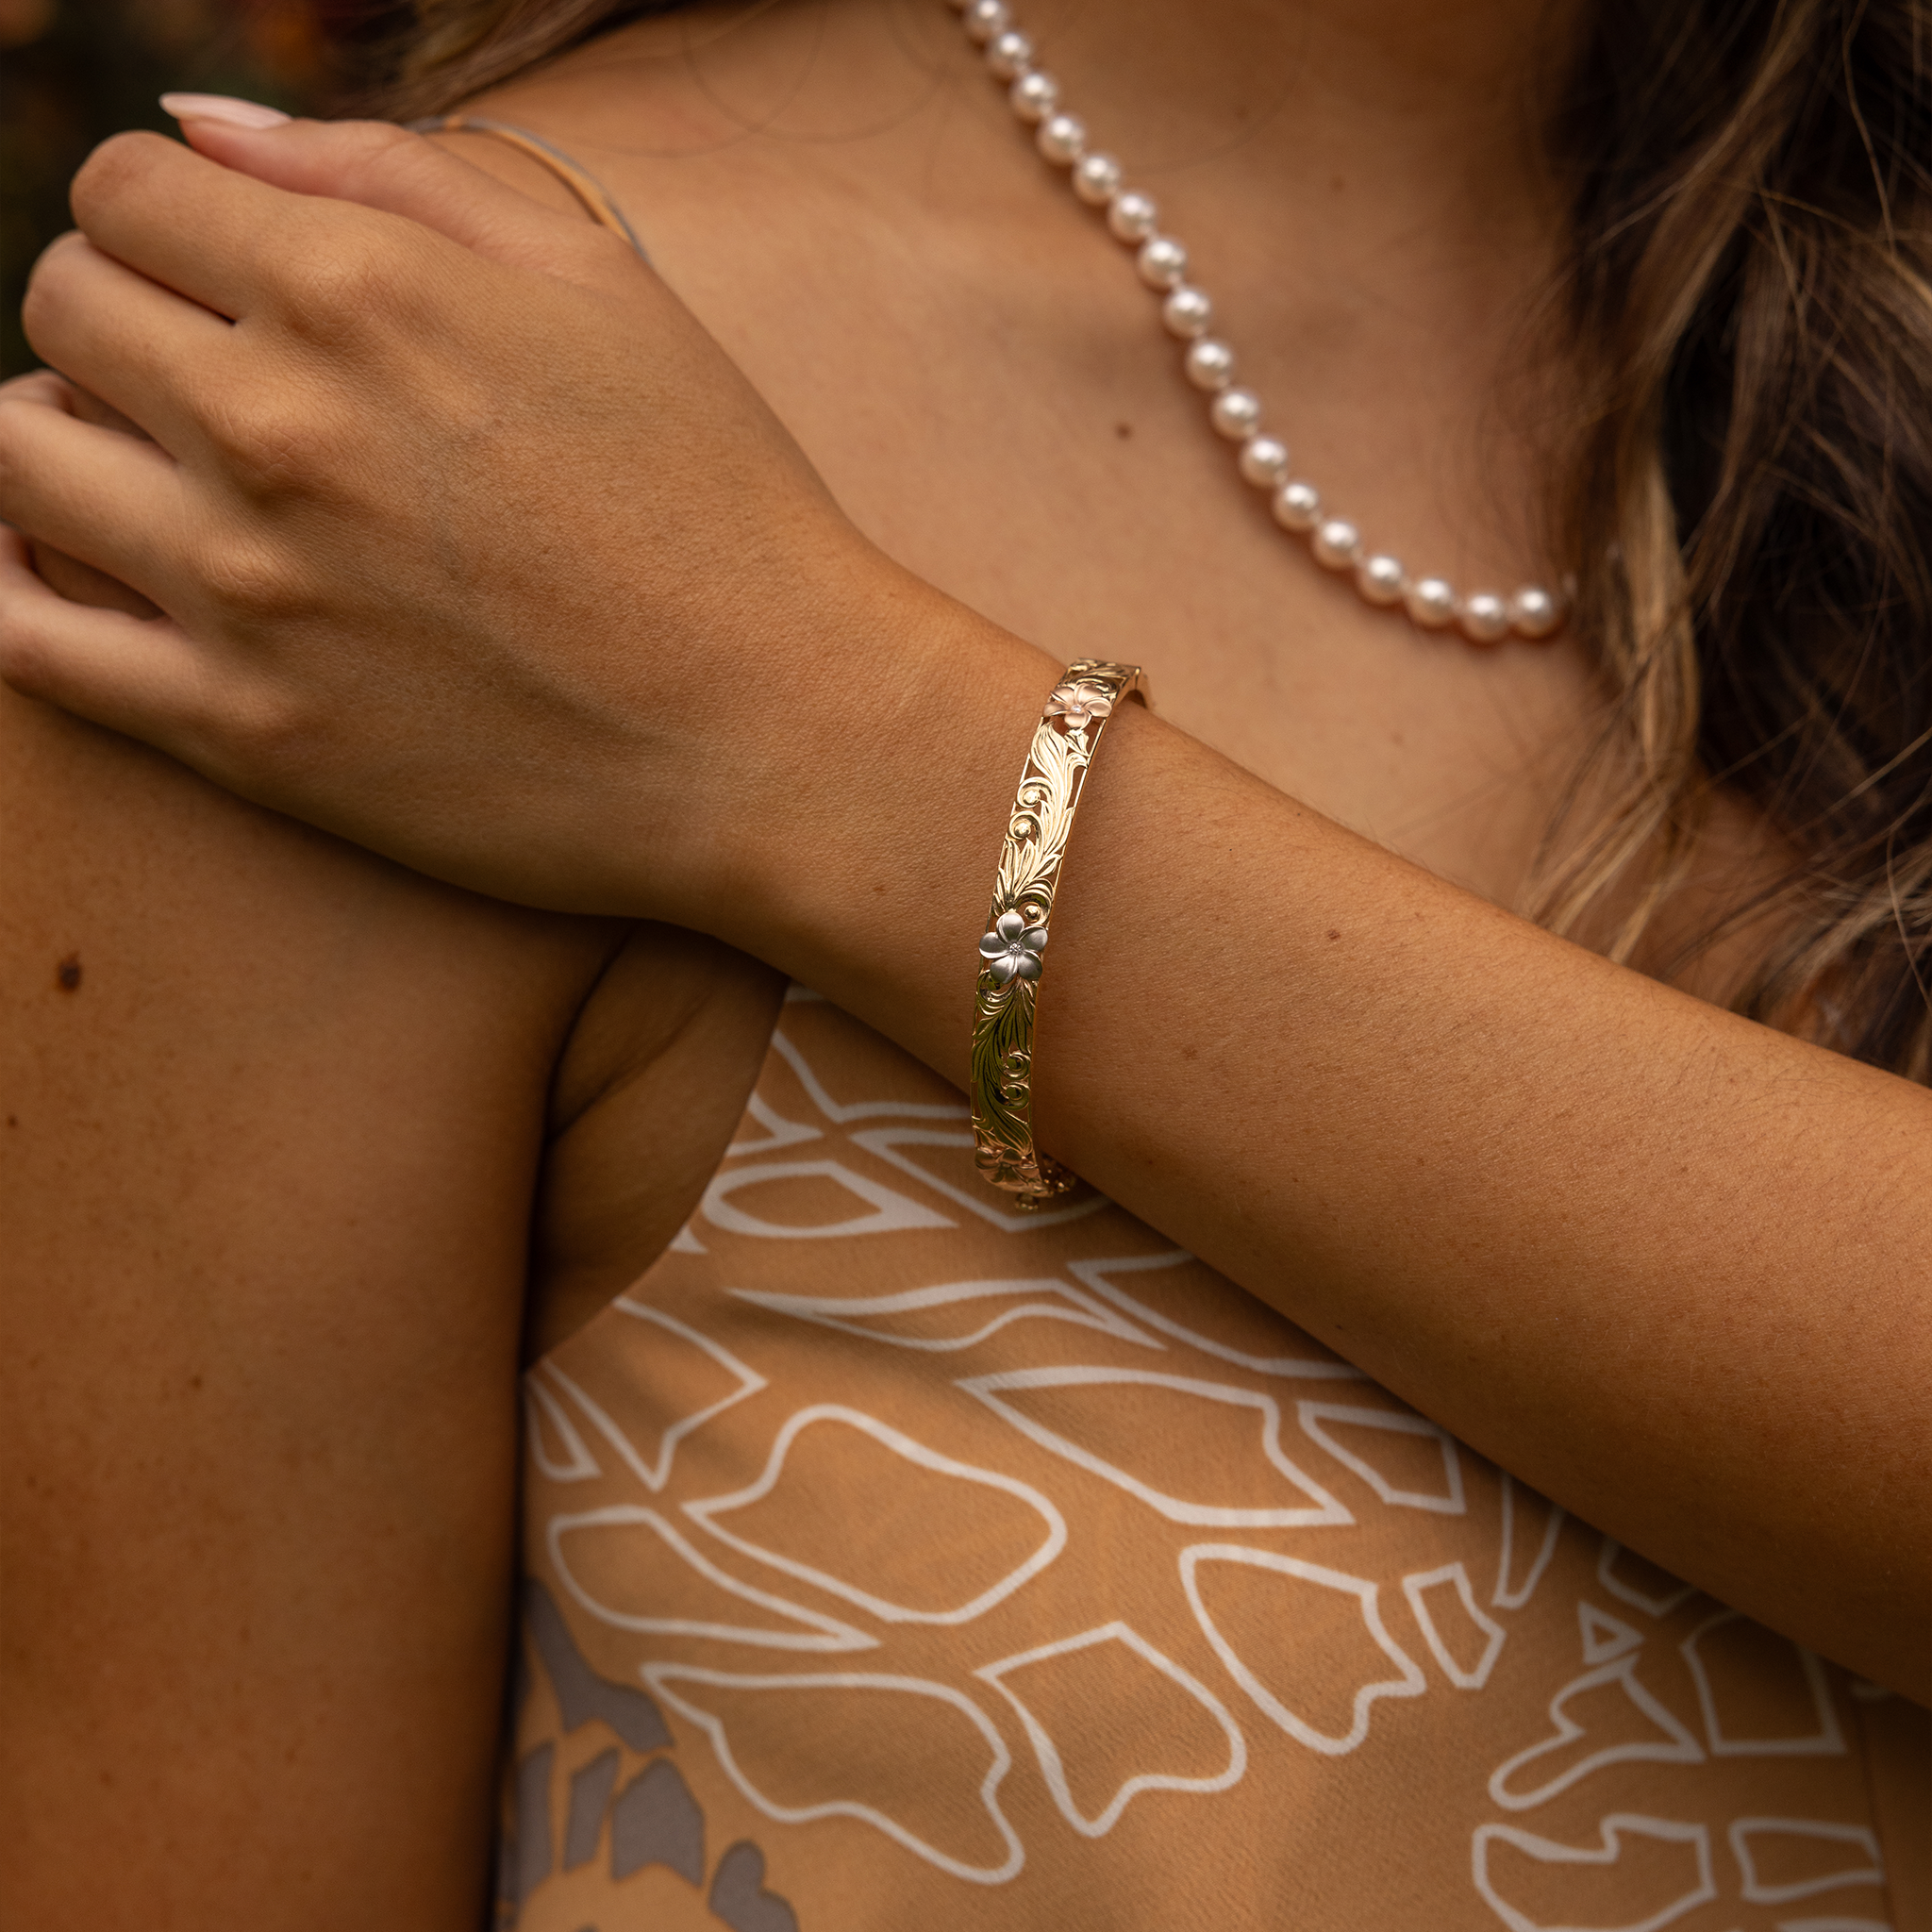 Bracelet de plumeria héritage hawaïen en or oror or avec diamants - 8 mm - taille 7.5